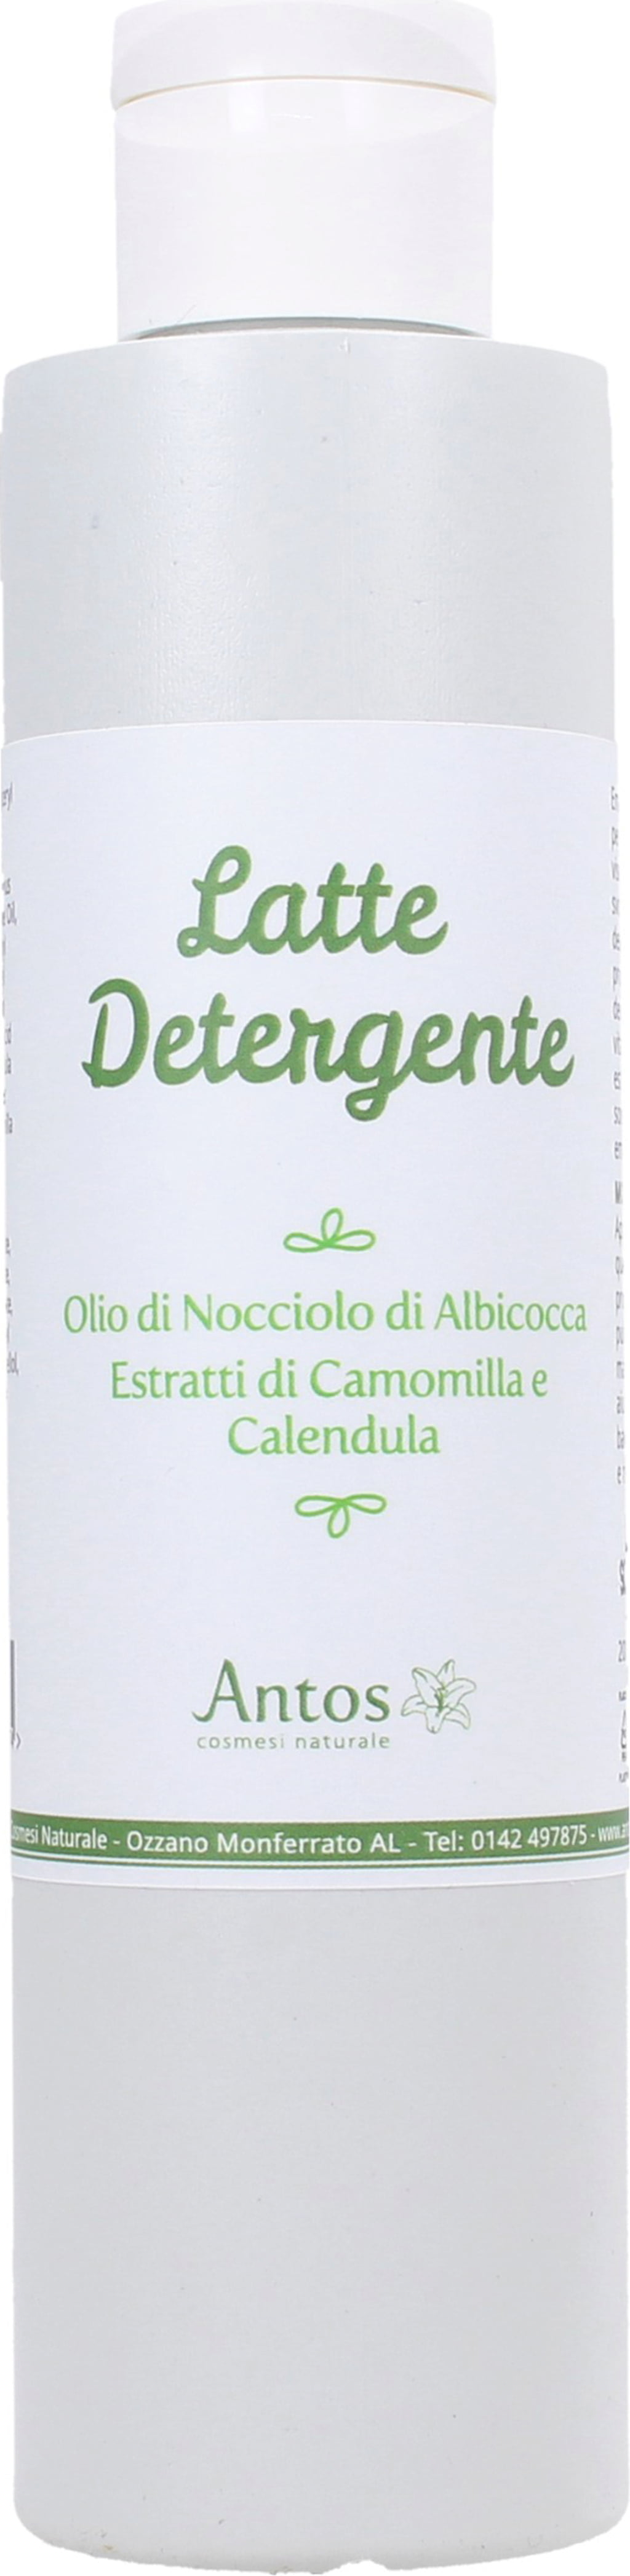 Antos Latte Detergente - 200 ml bottiglia